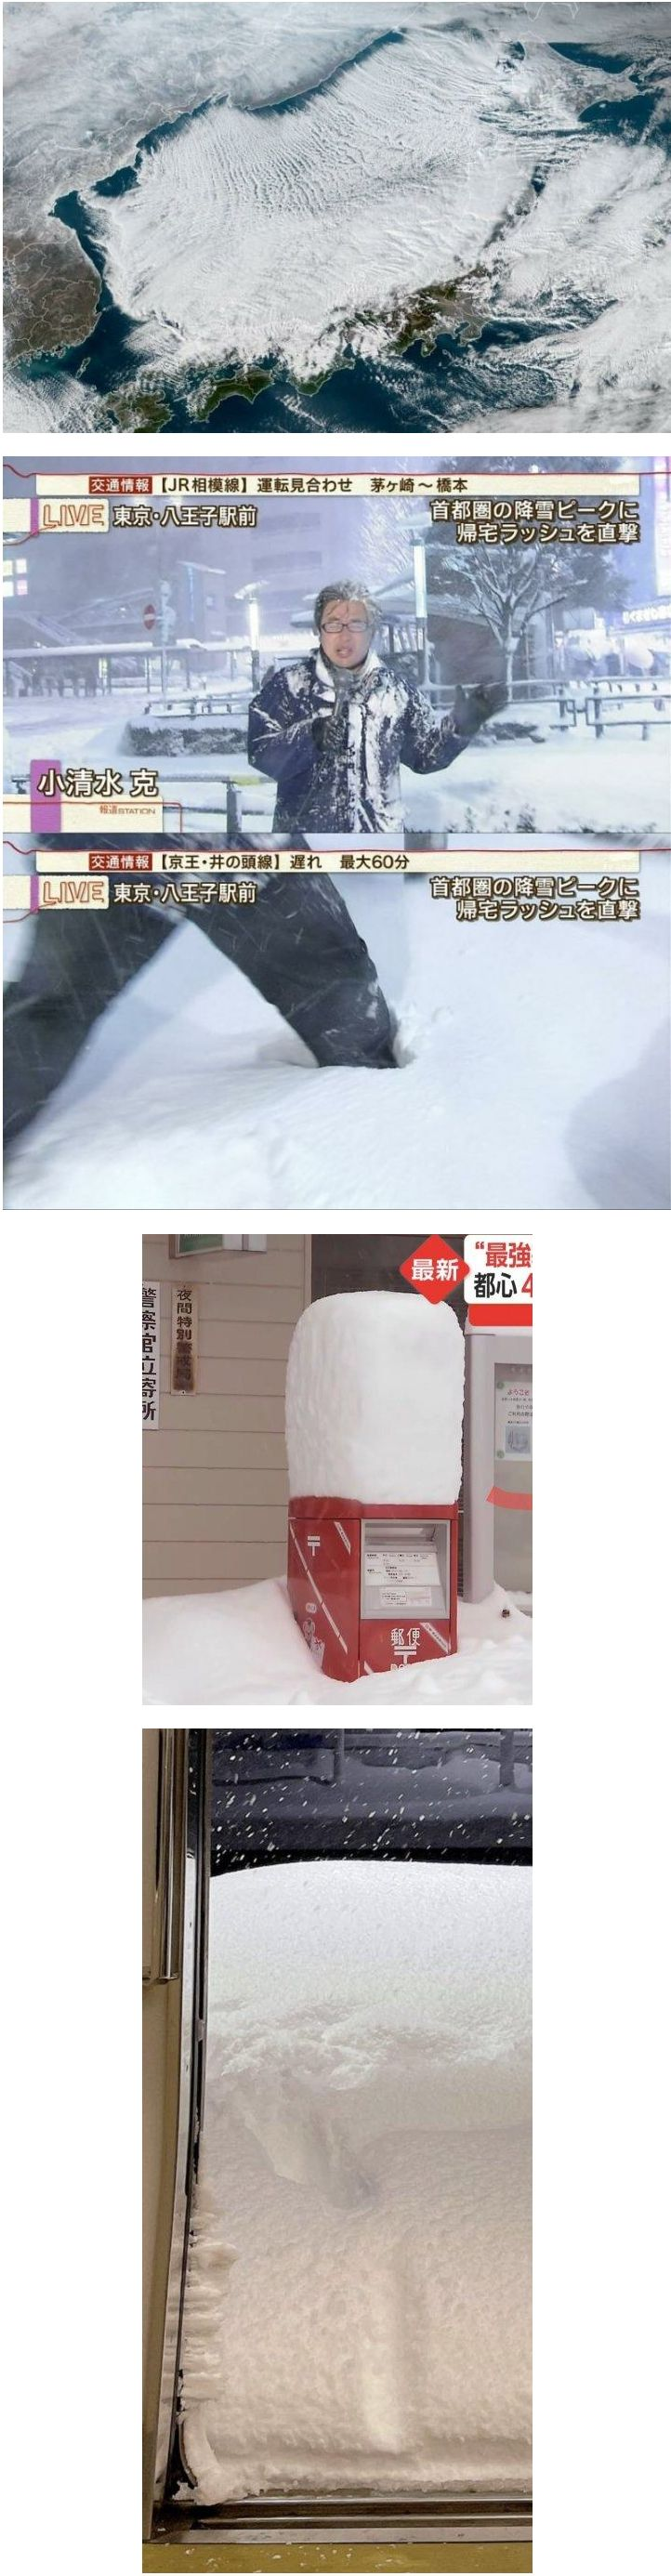 눈 오지게 내리는 일본 근황.jpg